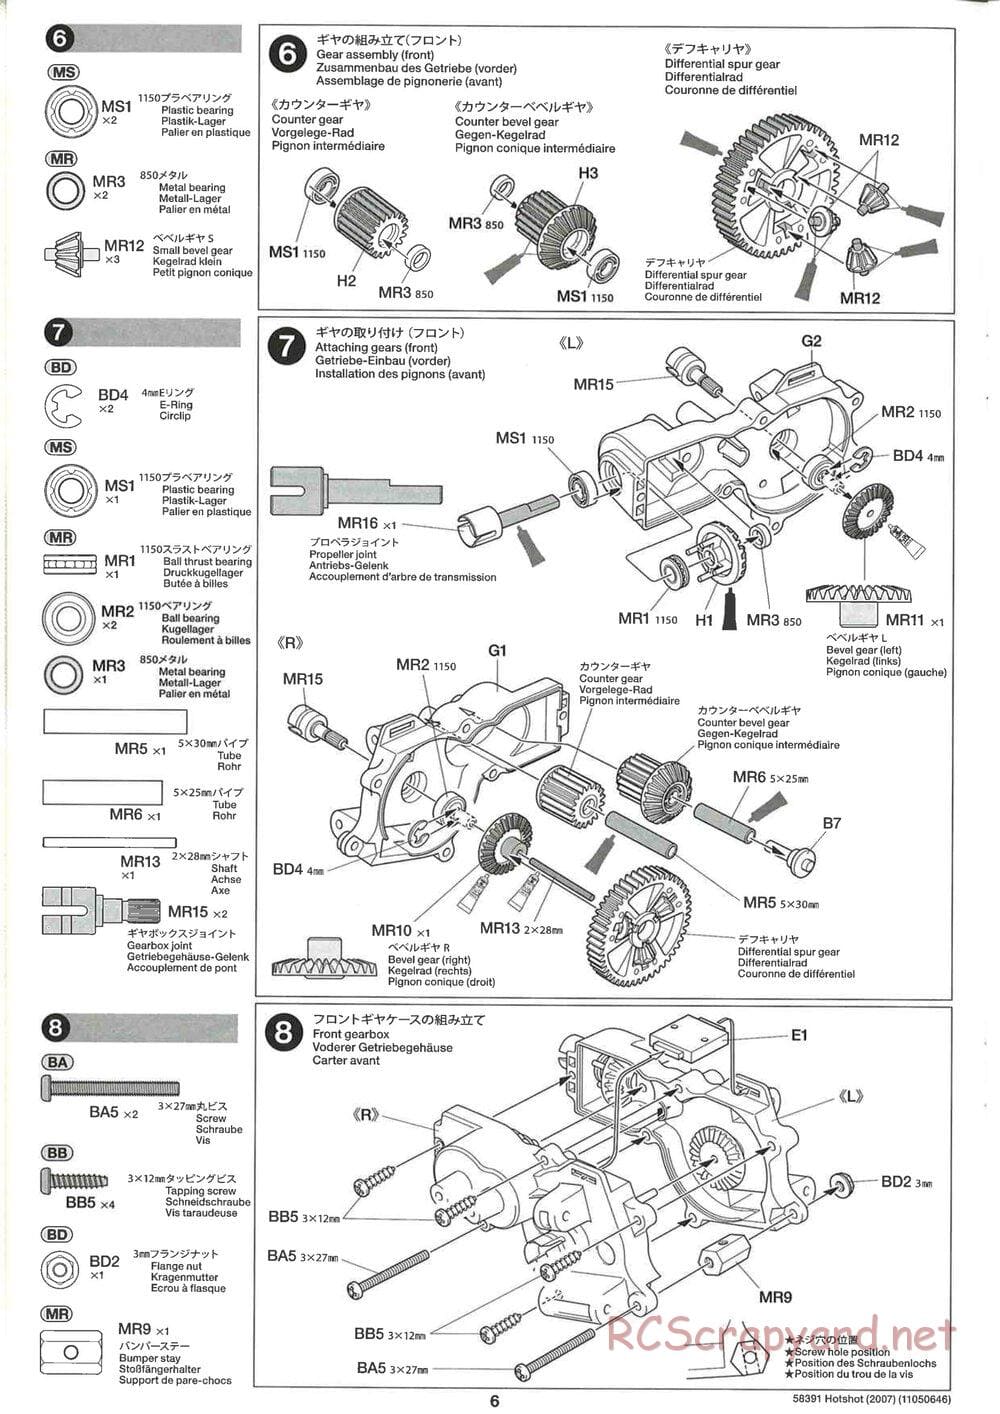 Tamiya - Hotshot - 2007 - HS Chassis - Manual - Page 6